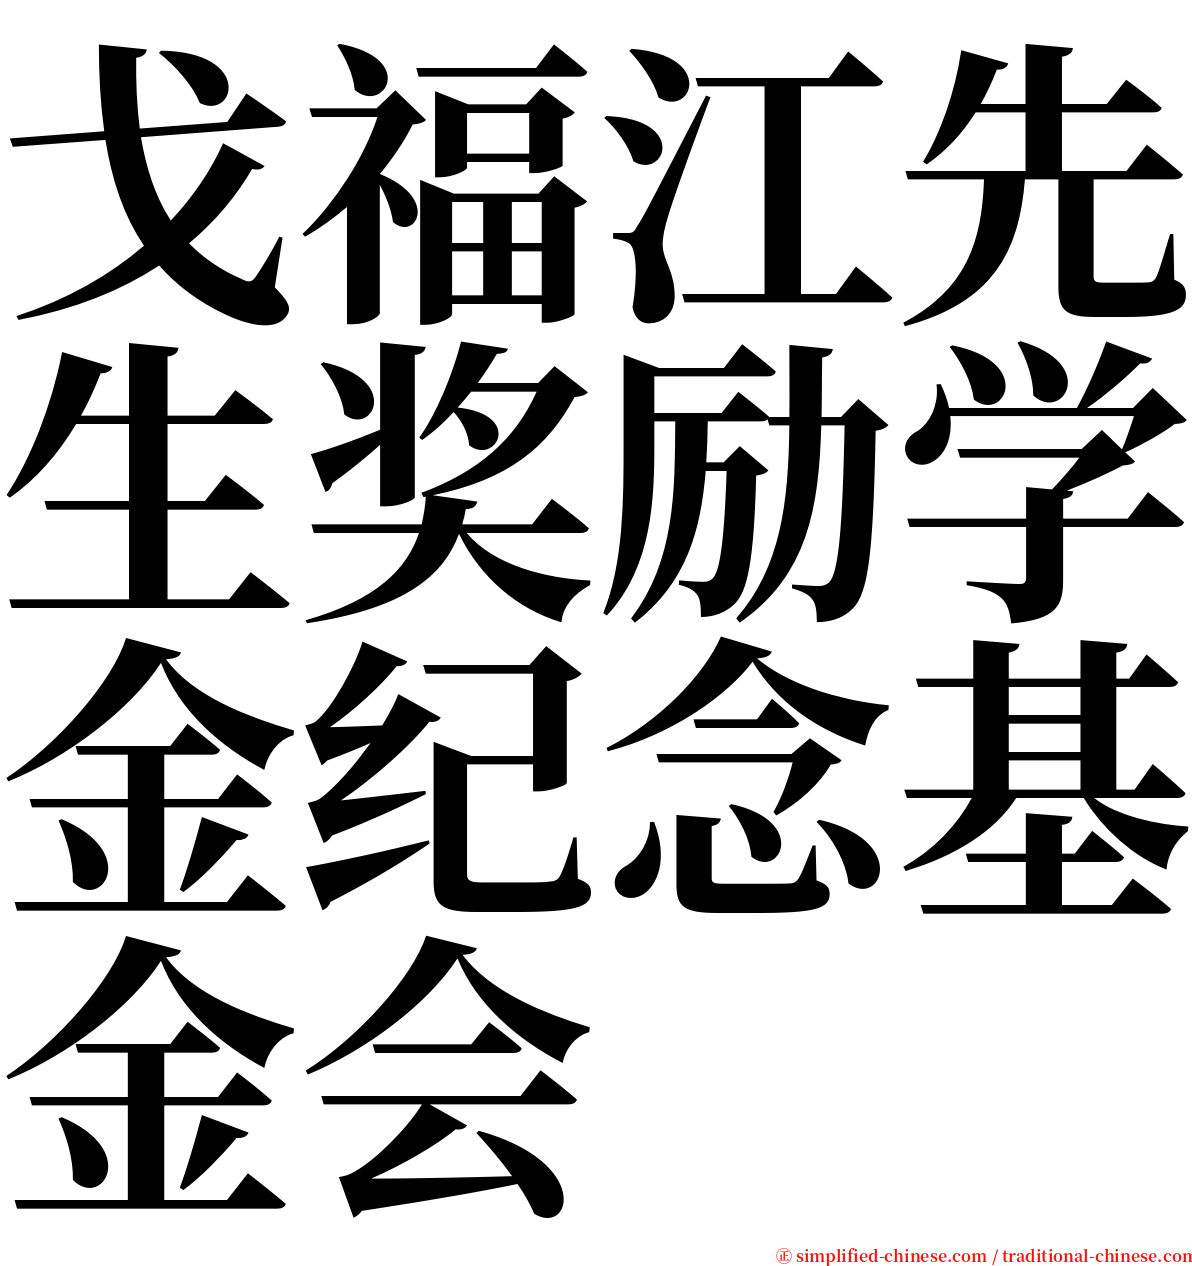 戈福江先生奖励学金纪念基金会 serif font